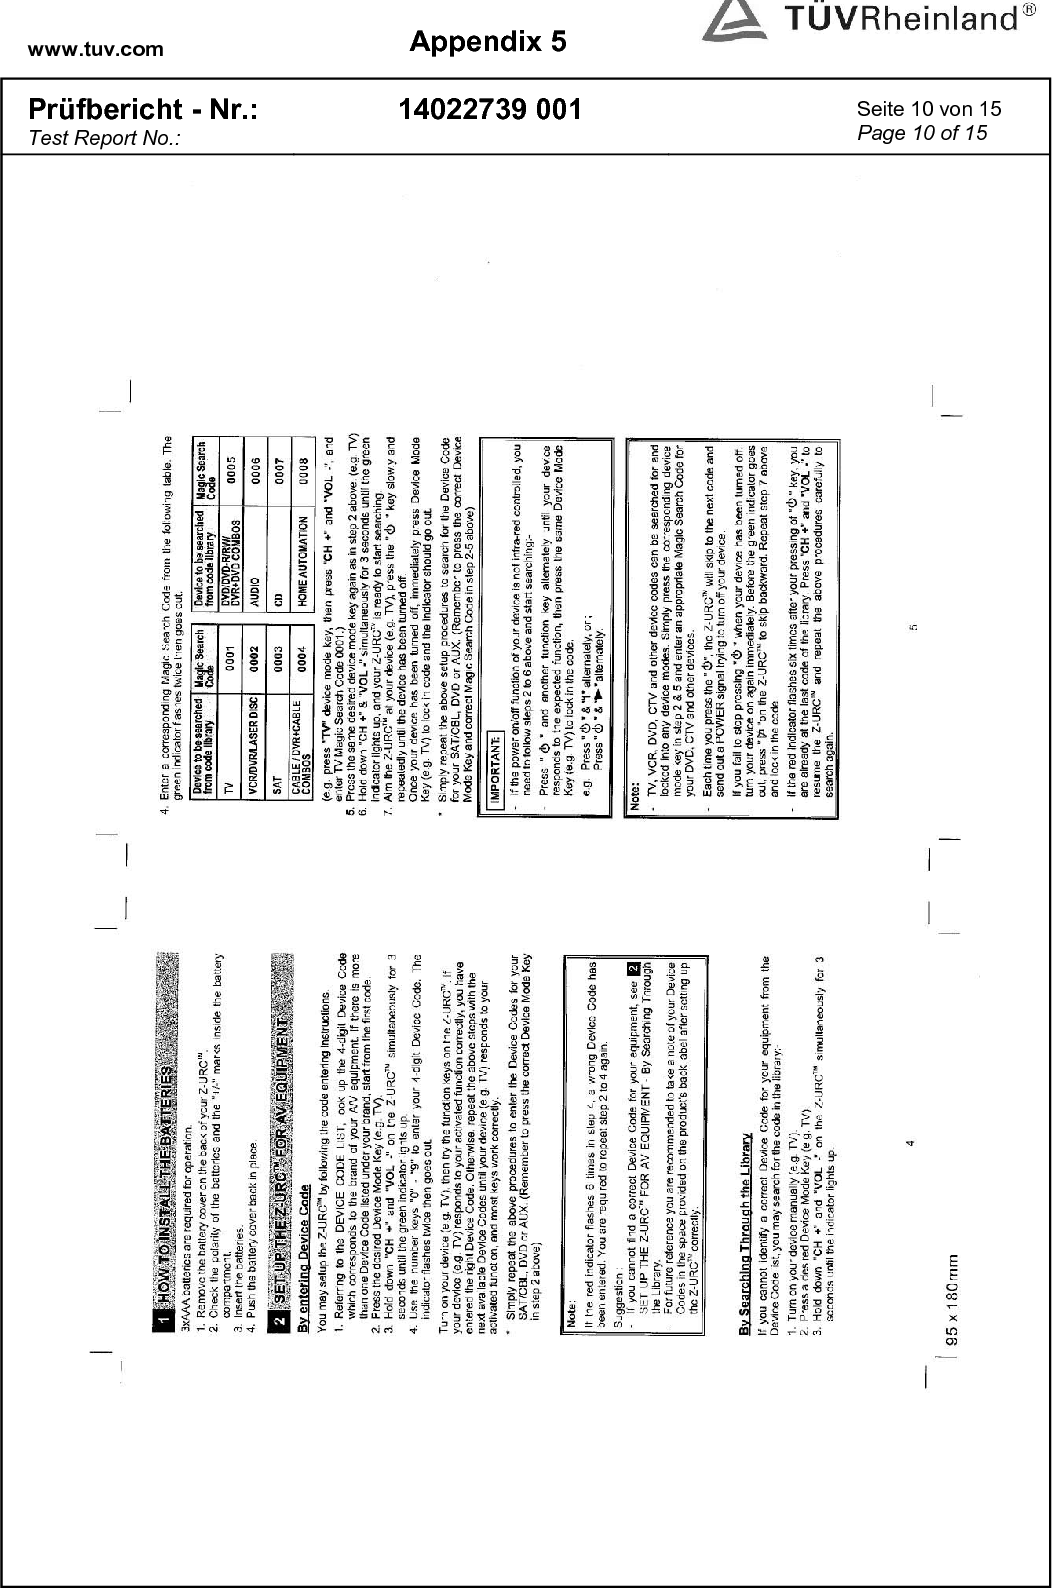 www.tuv.com  Appendix 5  Prüfbericht - Nr.: Test Report No.: 14022739 001  Seite 10 von 15 Page 10 of 15   